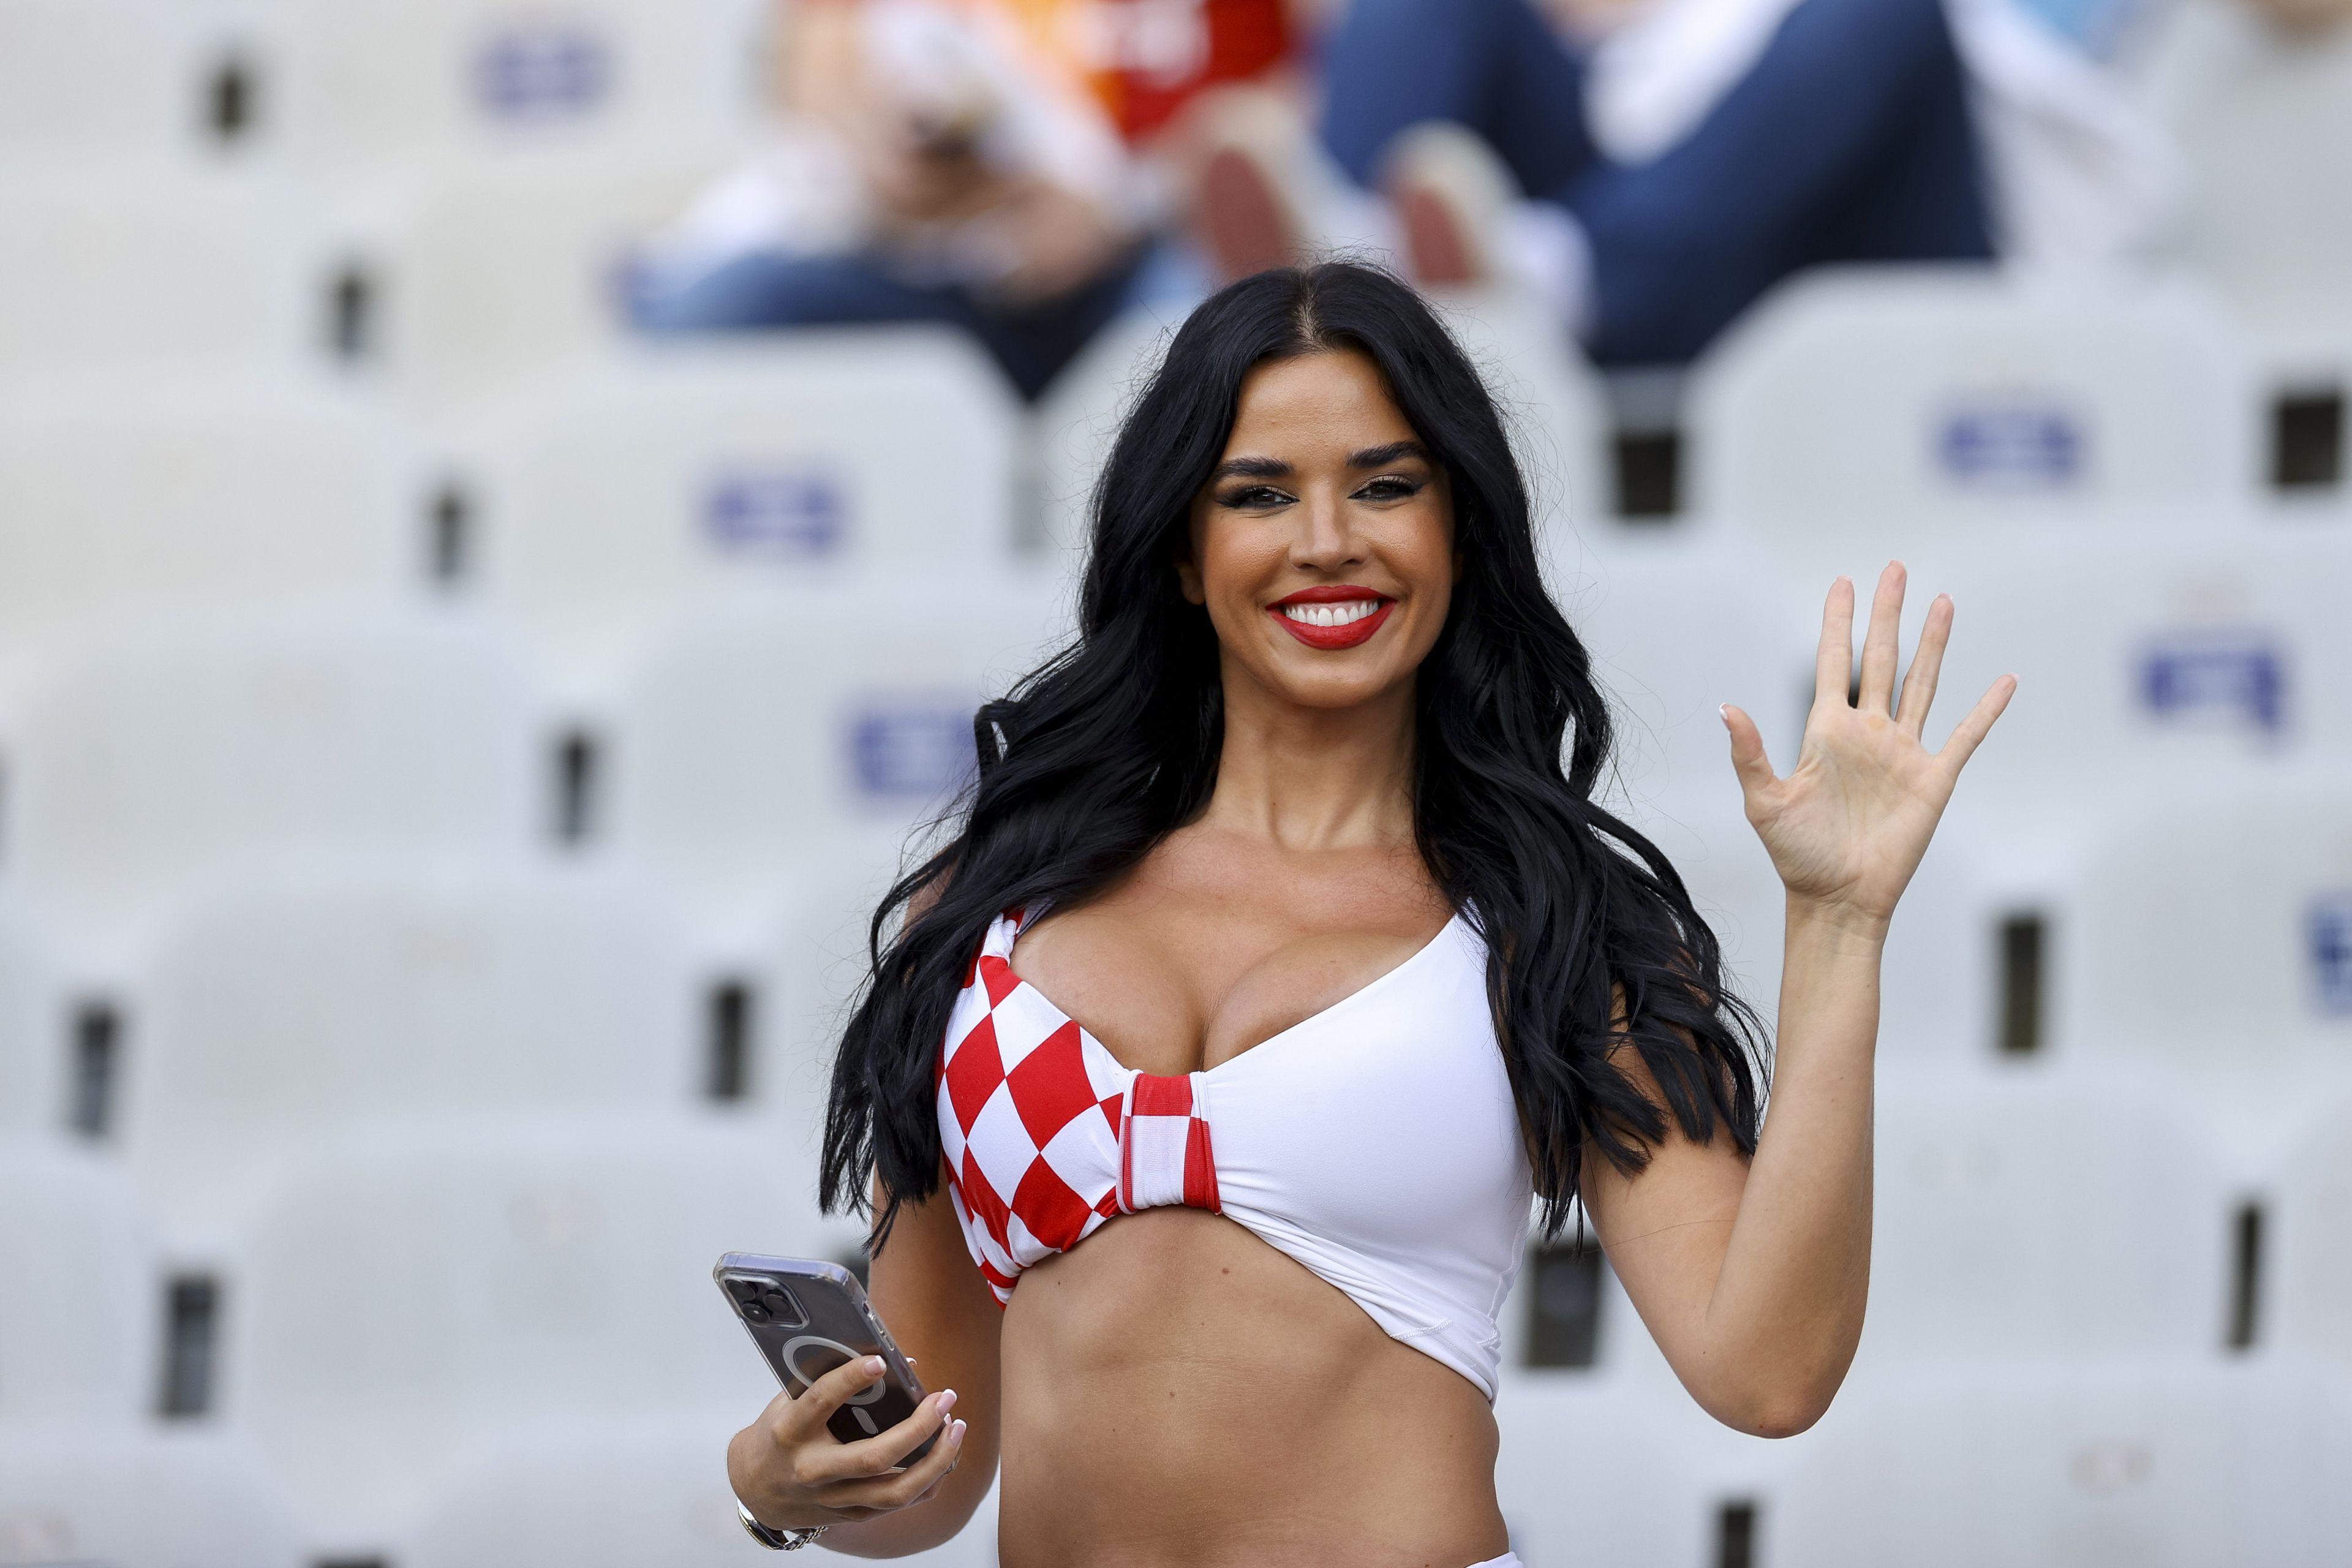 Ezzel a jó hírrel szerez örömöt a futballdrukkereknek a horvát kebelcsoda – videóval, képekkel